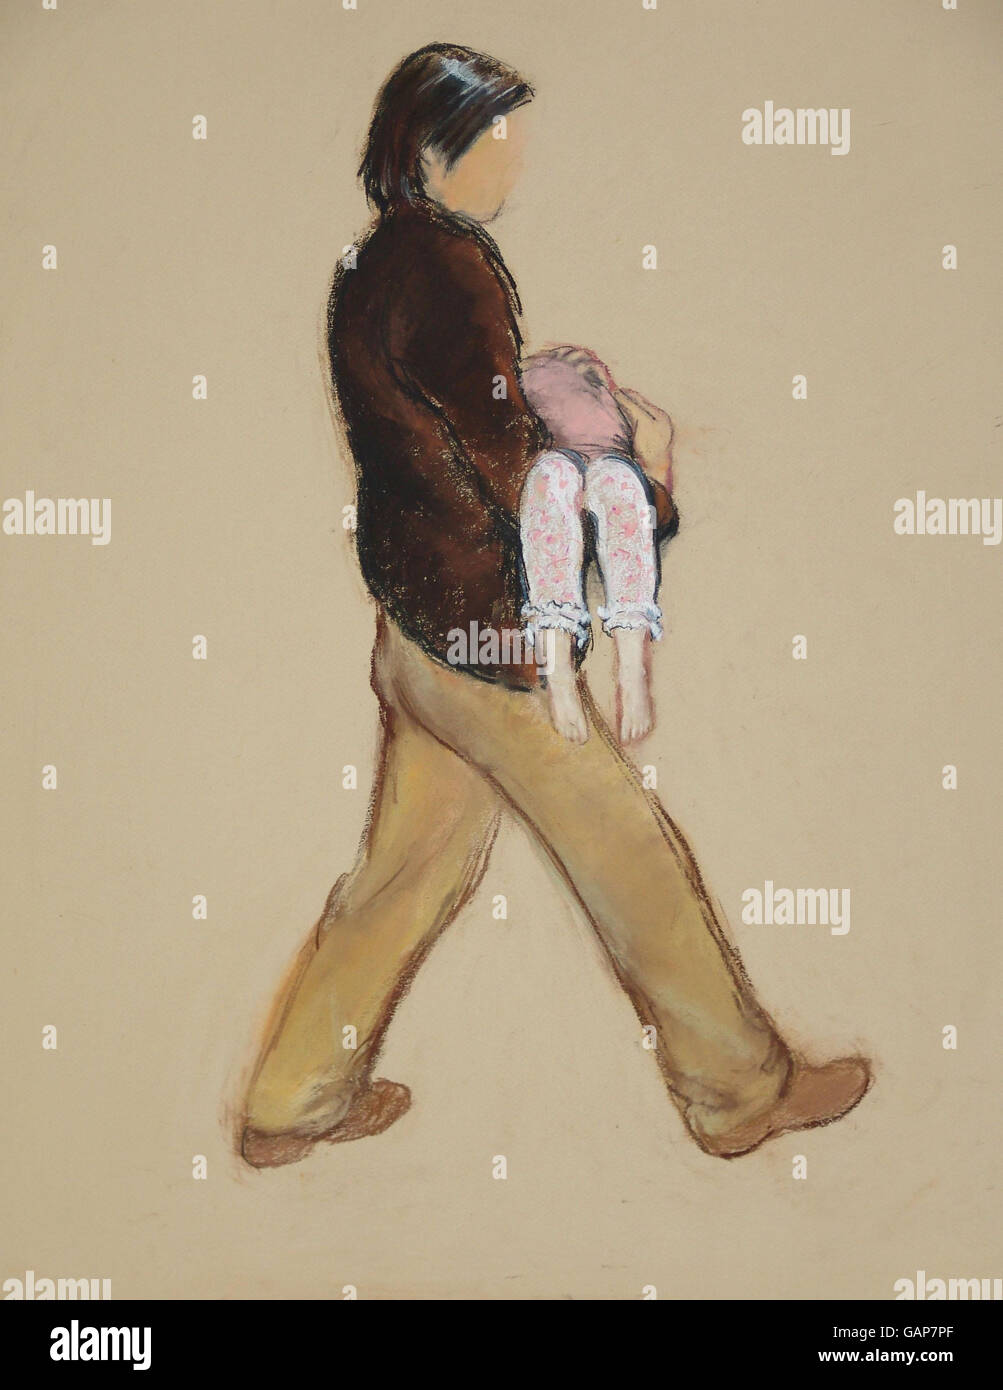 L'impressione di un artista dell'uomo Kate e Gerry McCann credono di aver rapito la figlia. Foto Stock